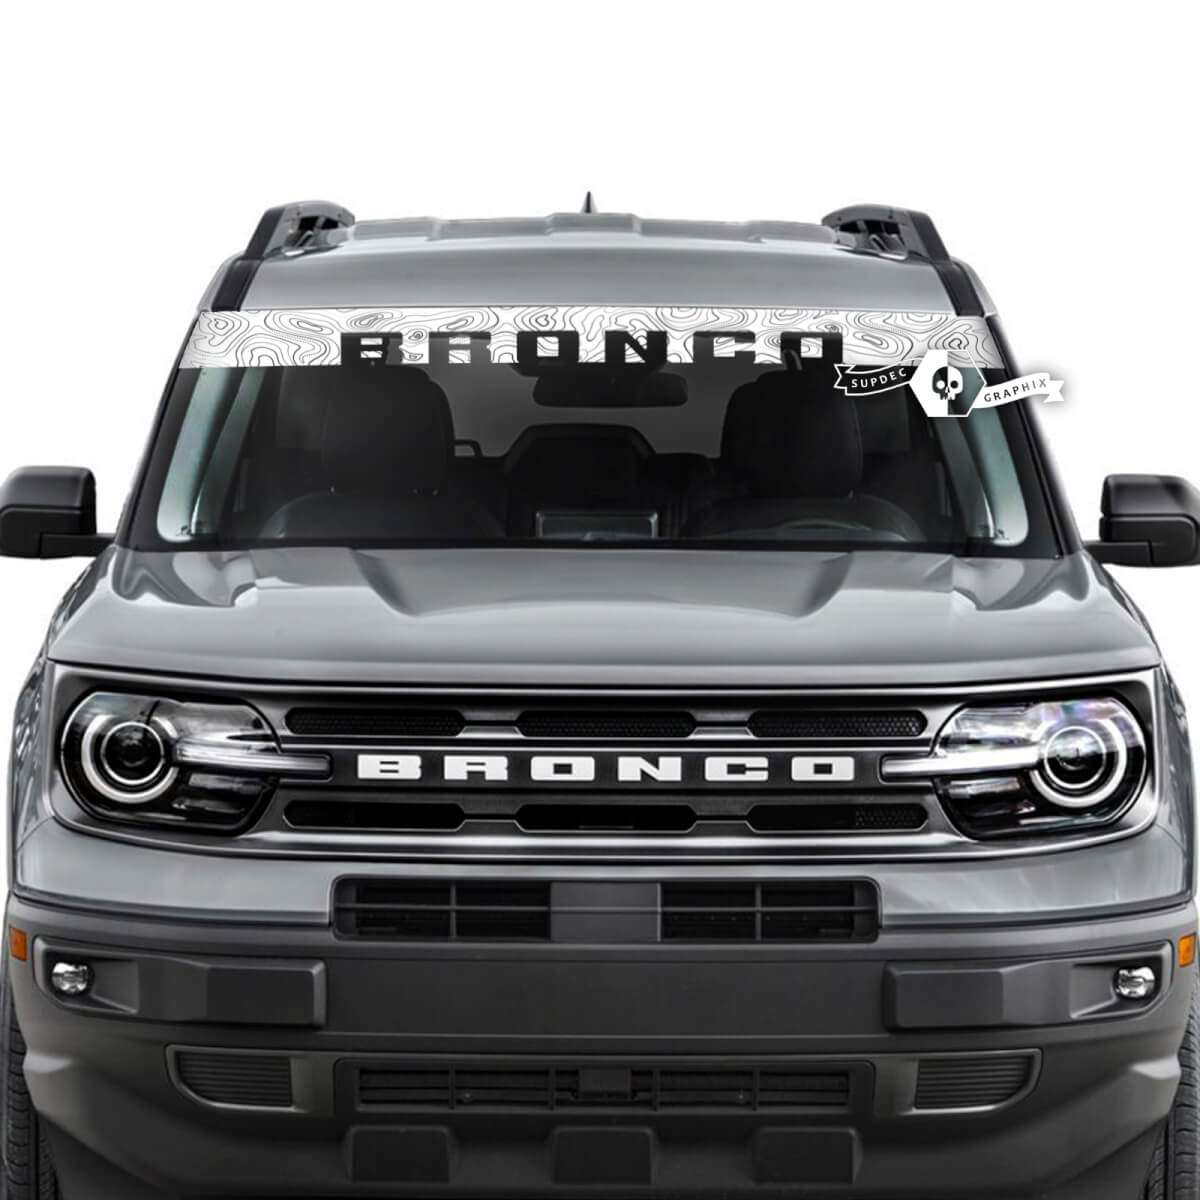 Ford Bronco Fenster Windschutzscheibe Front Topografische Karte Logo Streifen Grafikaufkleber
